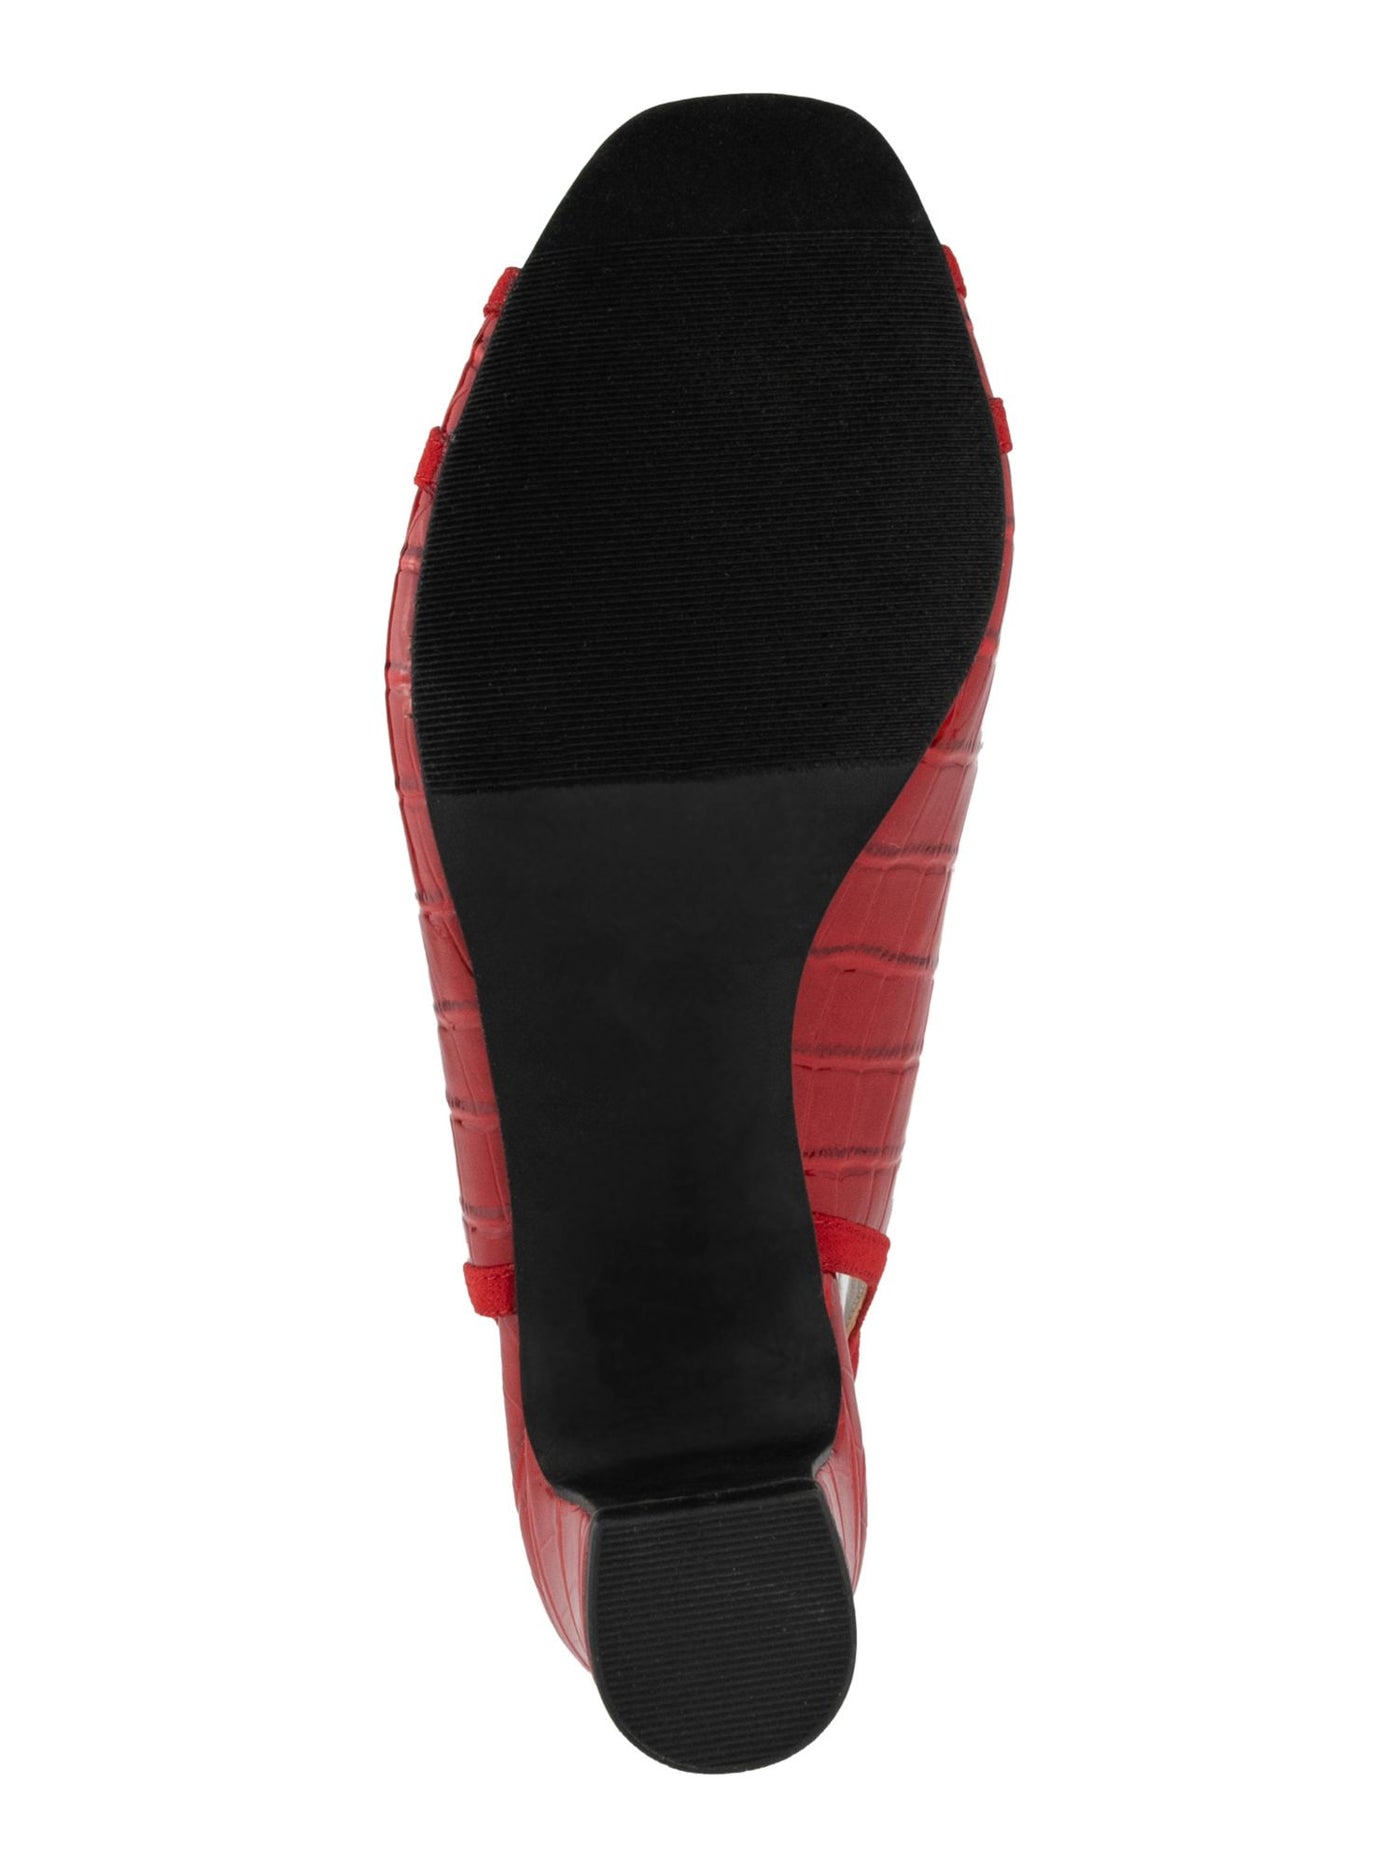 KAREN SCOTT Womens Red Croc Embossed Hardware Accent Goring Padded Jerricca Open Toe Block Heel Slip On Dress Slingback M